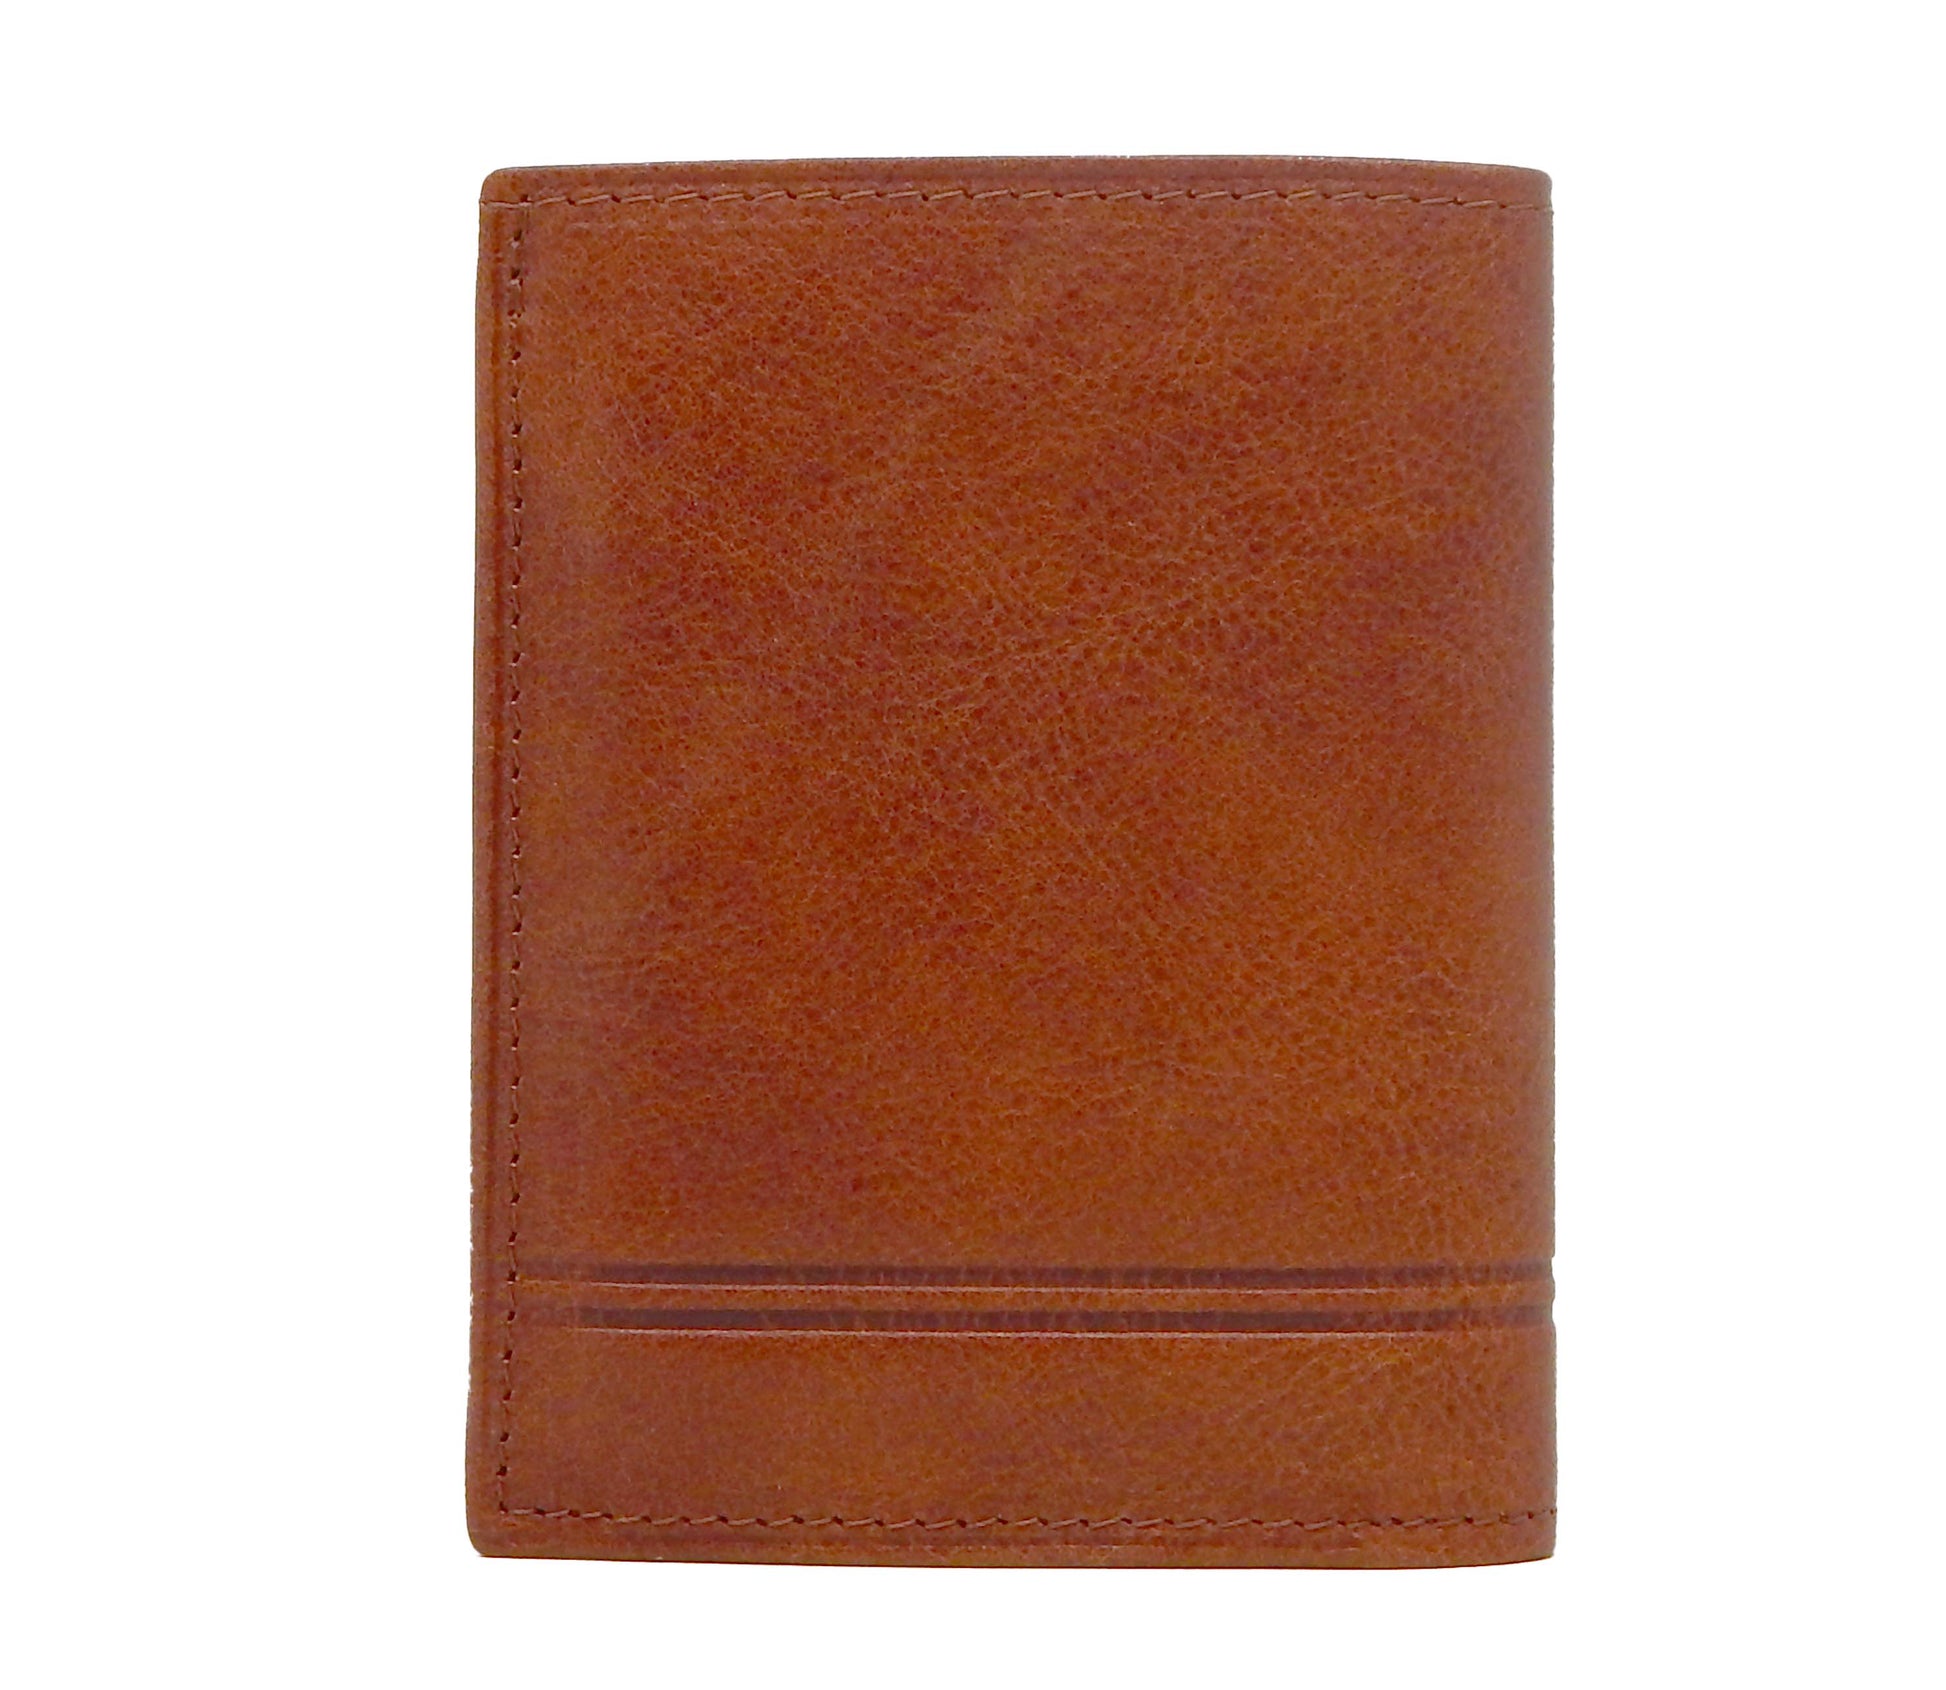 #color_ SaddleBrown | Cavalinho Men's Trifold Leather Wallet - SaddleBrown - 28160522.13.99_3